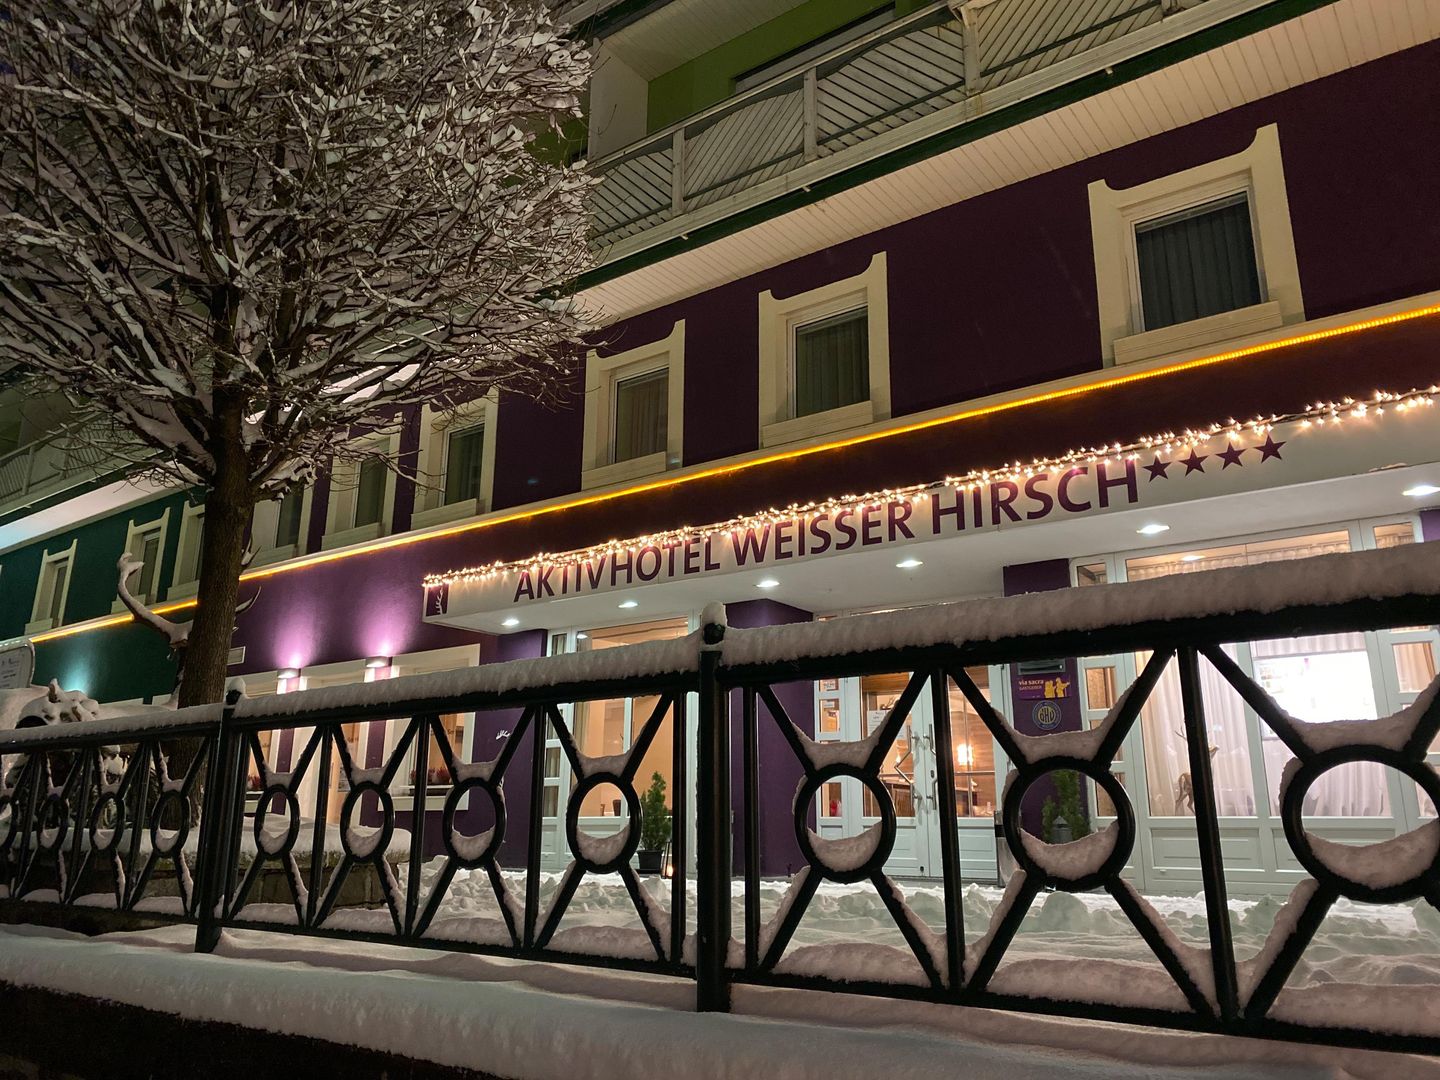 Aktivhotel Weißer Hirsch in Mariazell, Aktivhotel Weißer Hirsch / Österreich